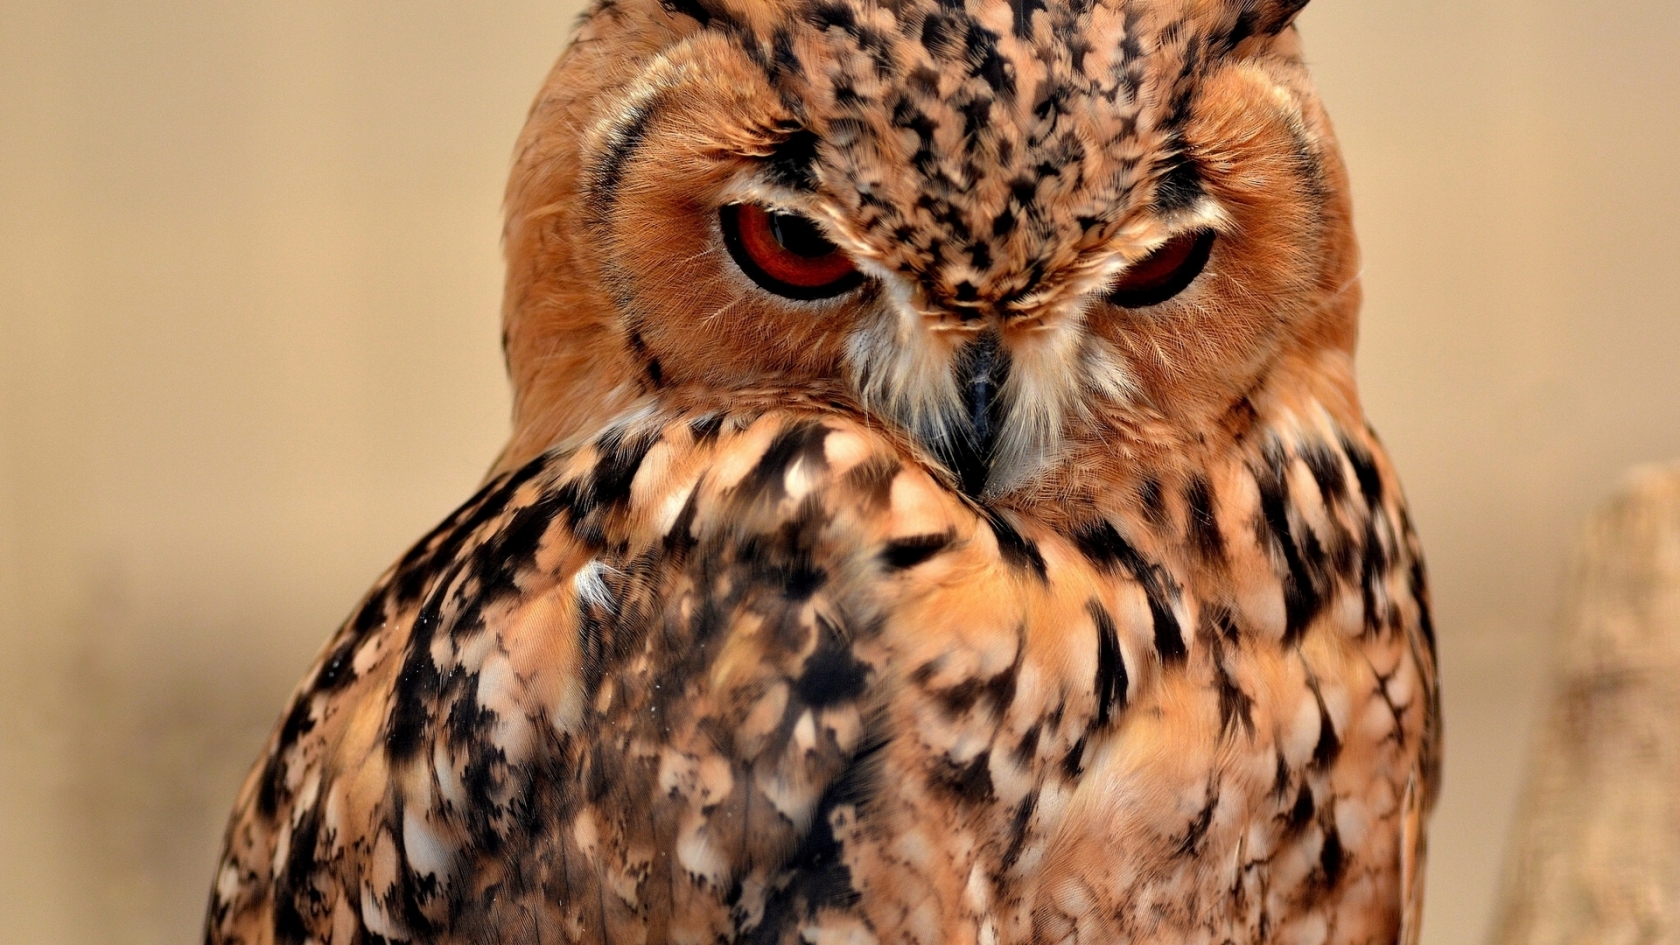 Desert Eagle Owl for 1680 x 945 HDTV resolution